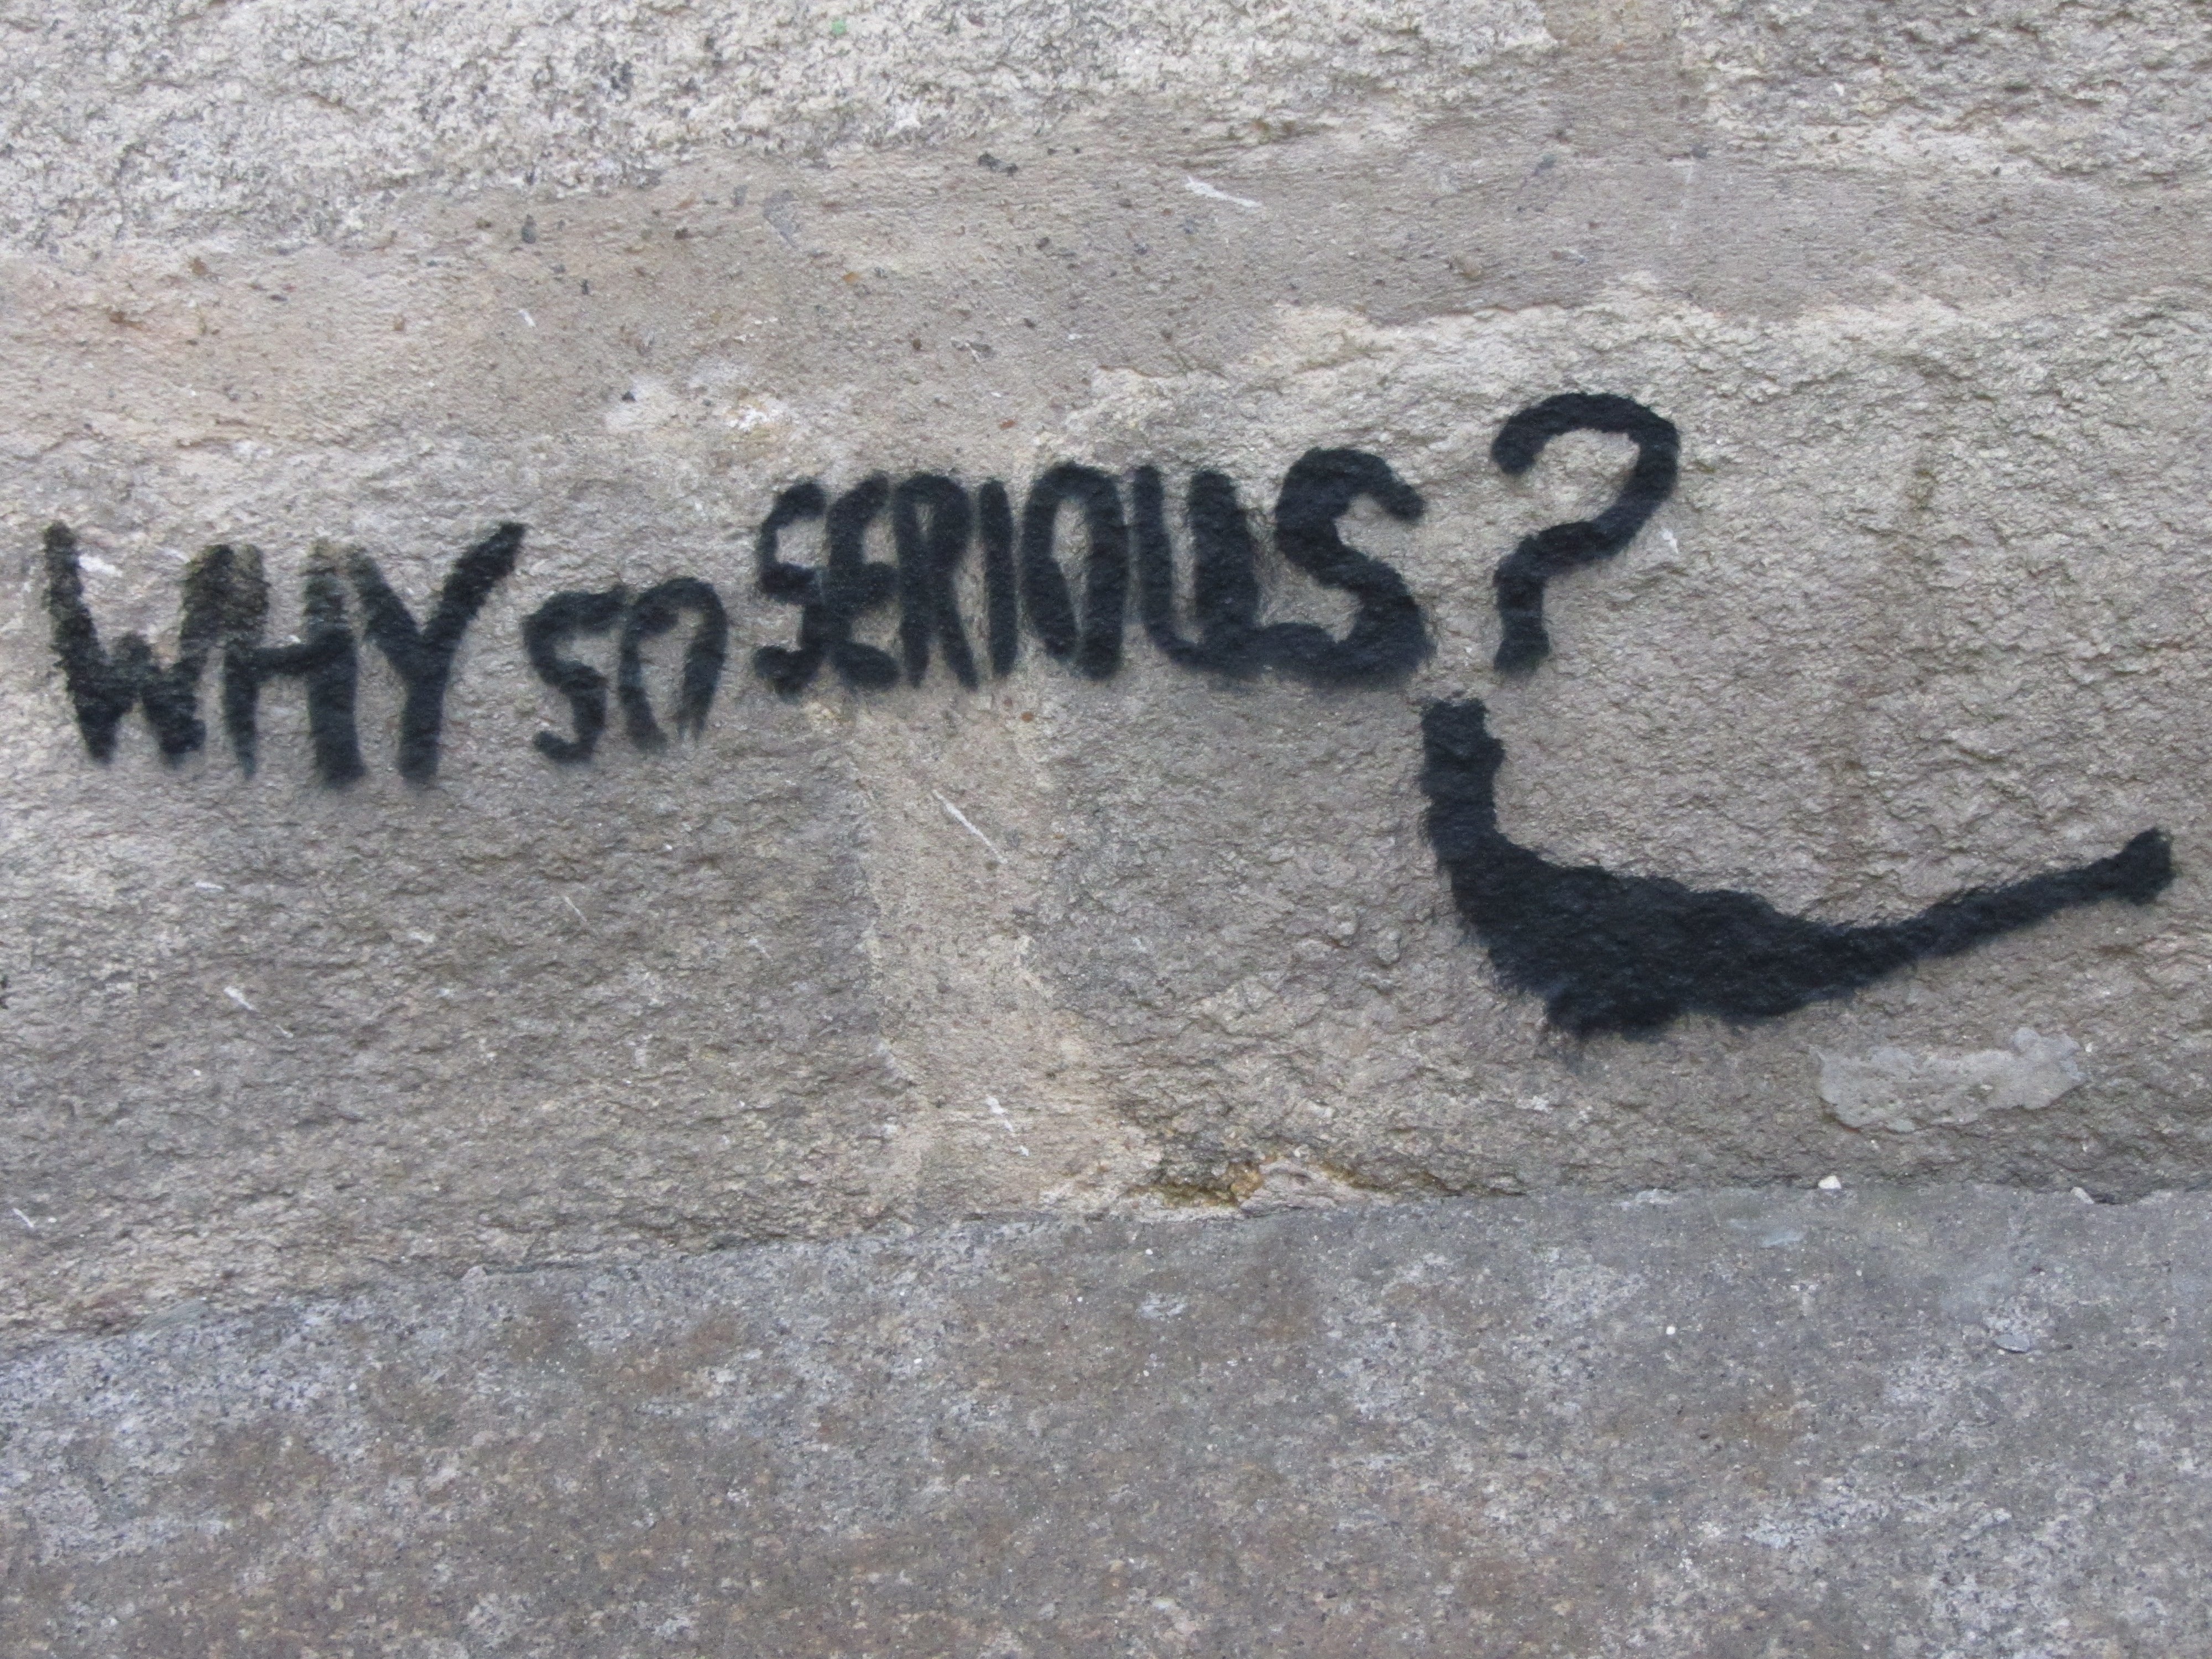 Mention "Why so serious?" avec un sourire taggué sur un mur en pierres